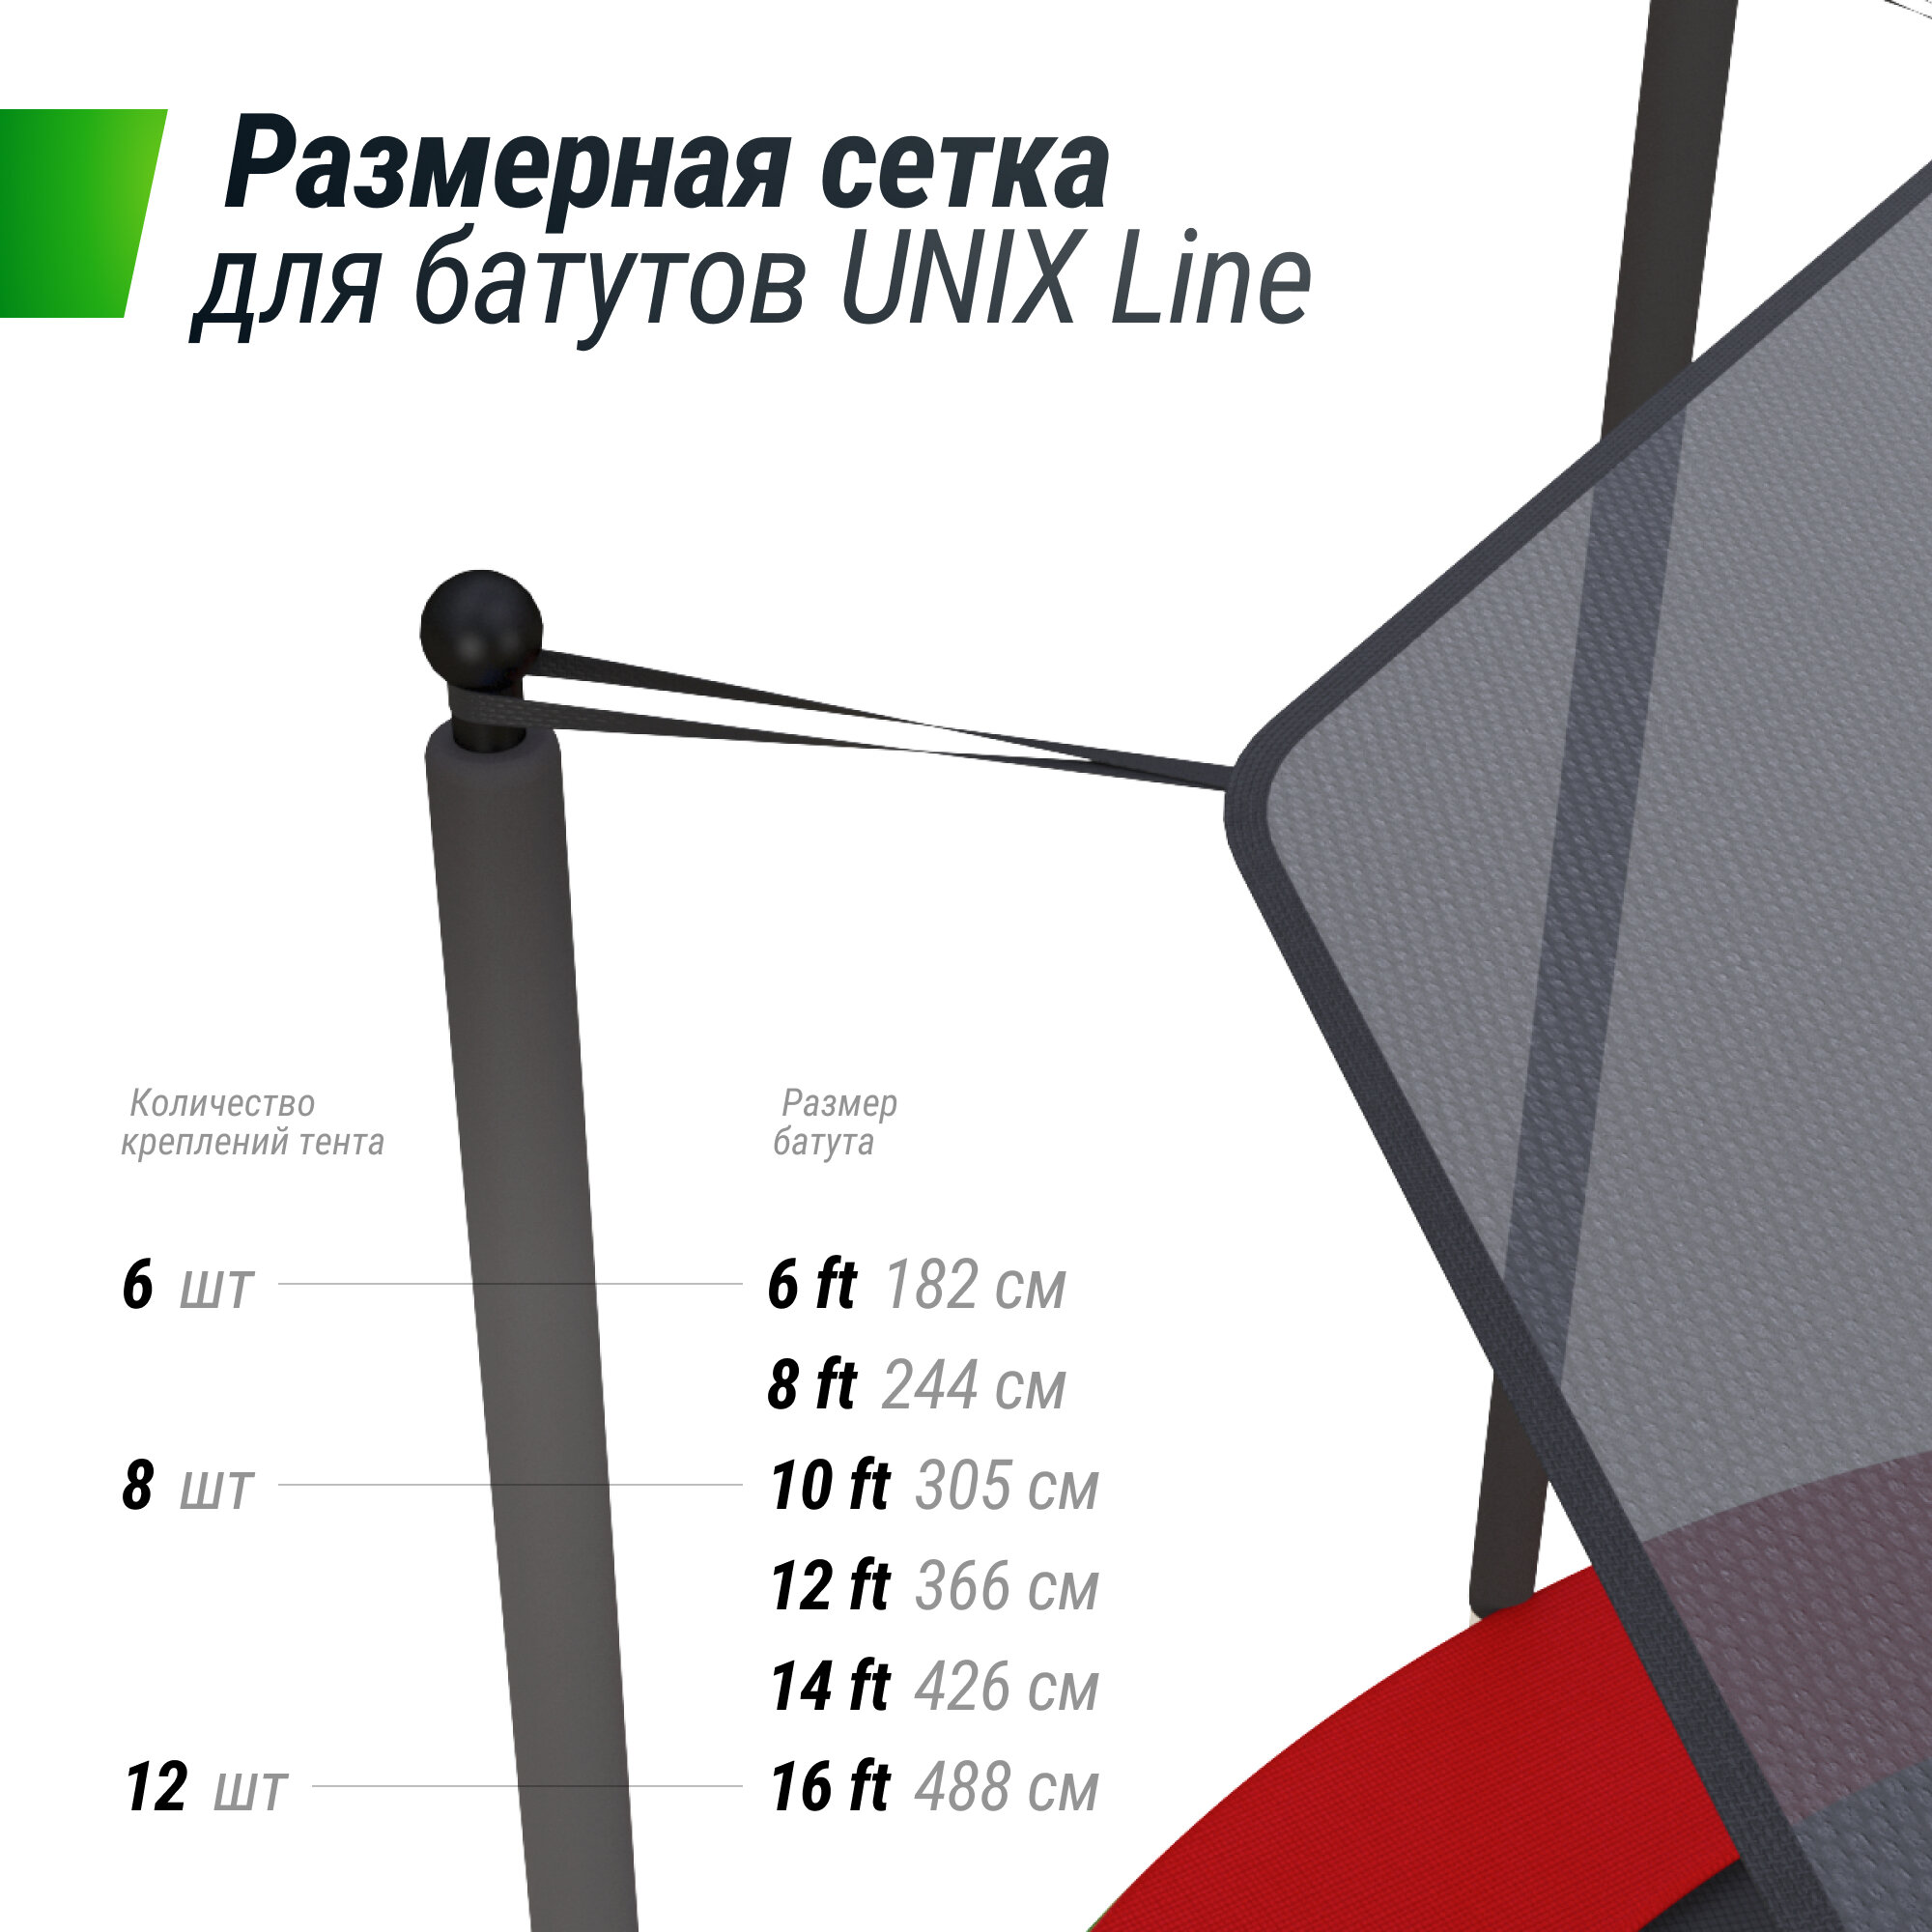 Солнцезащитный тент UNIX Line 182 см (6 ft) UNIXLINE